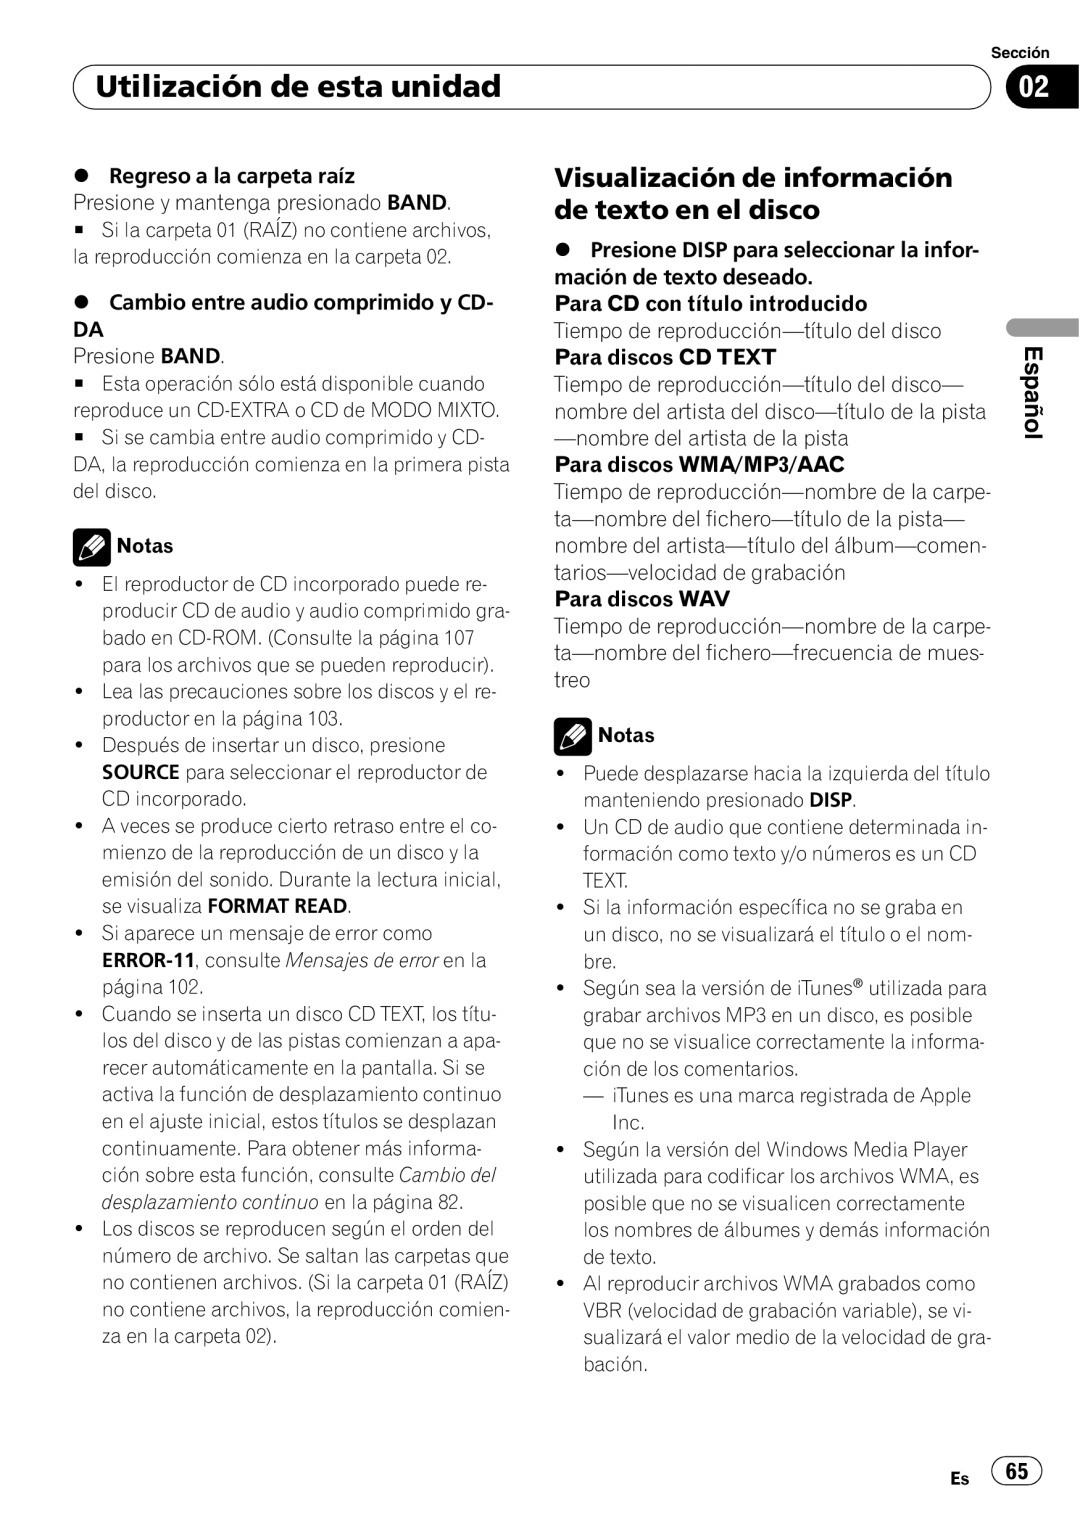 Pioneer DEH-P4050UB operation manual Visualización de información de texto en el disco, Utilización de esta unidad, Español 